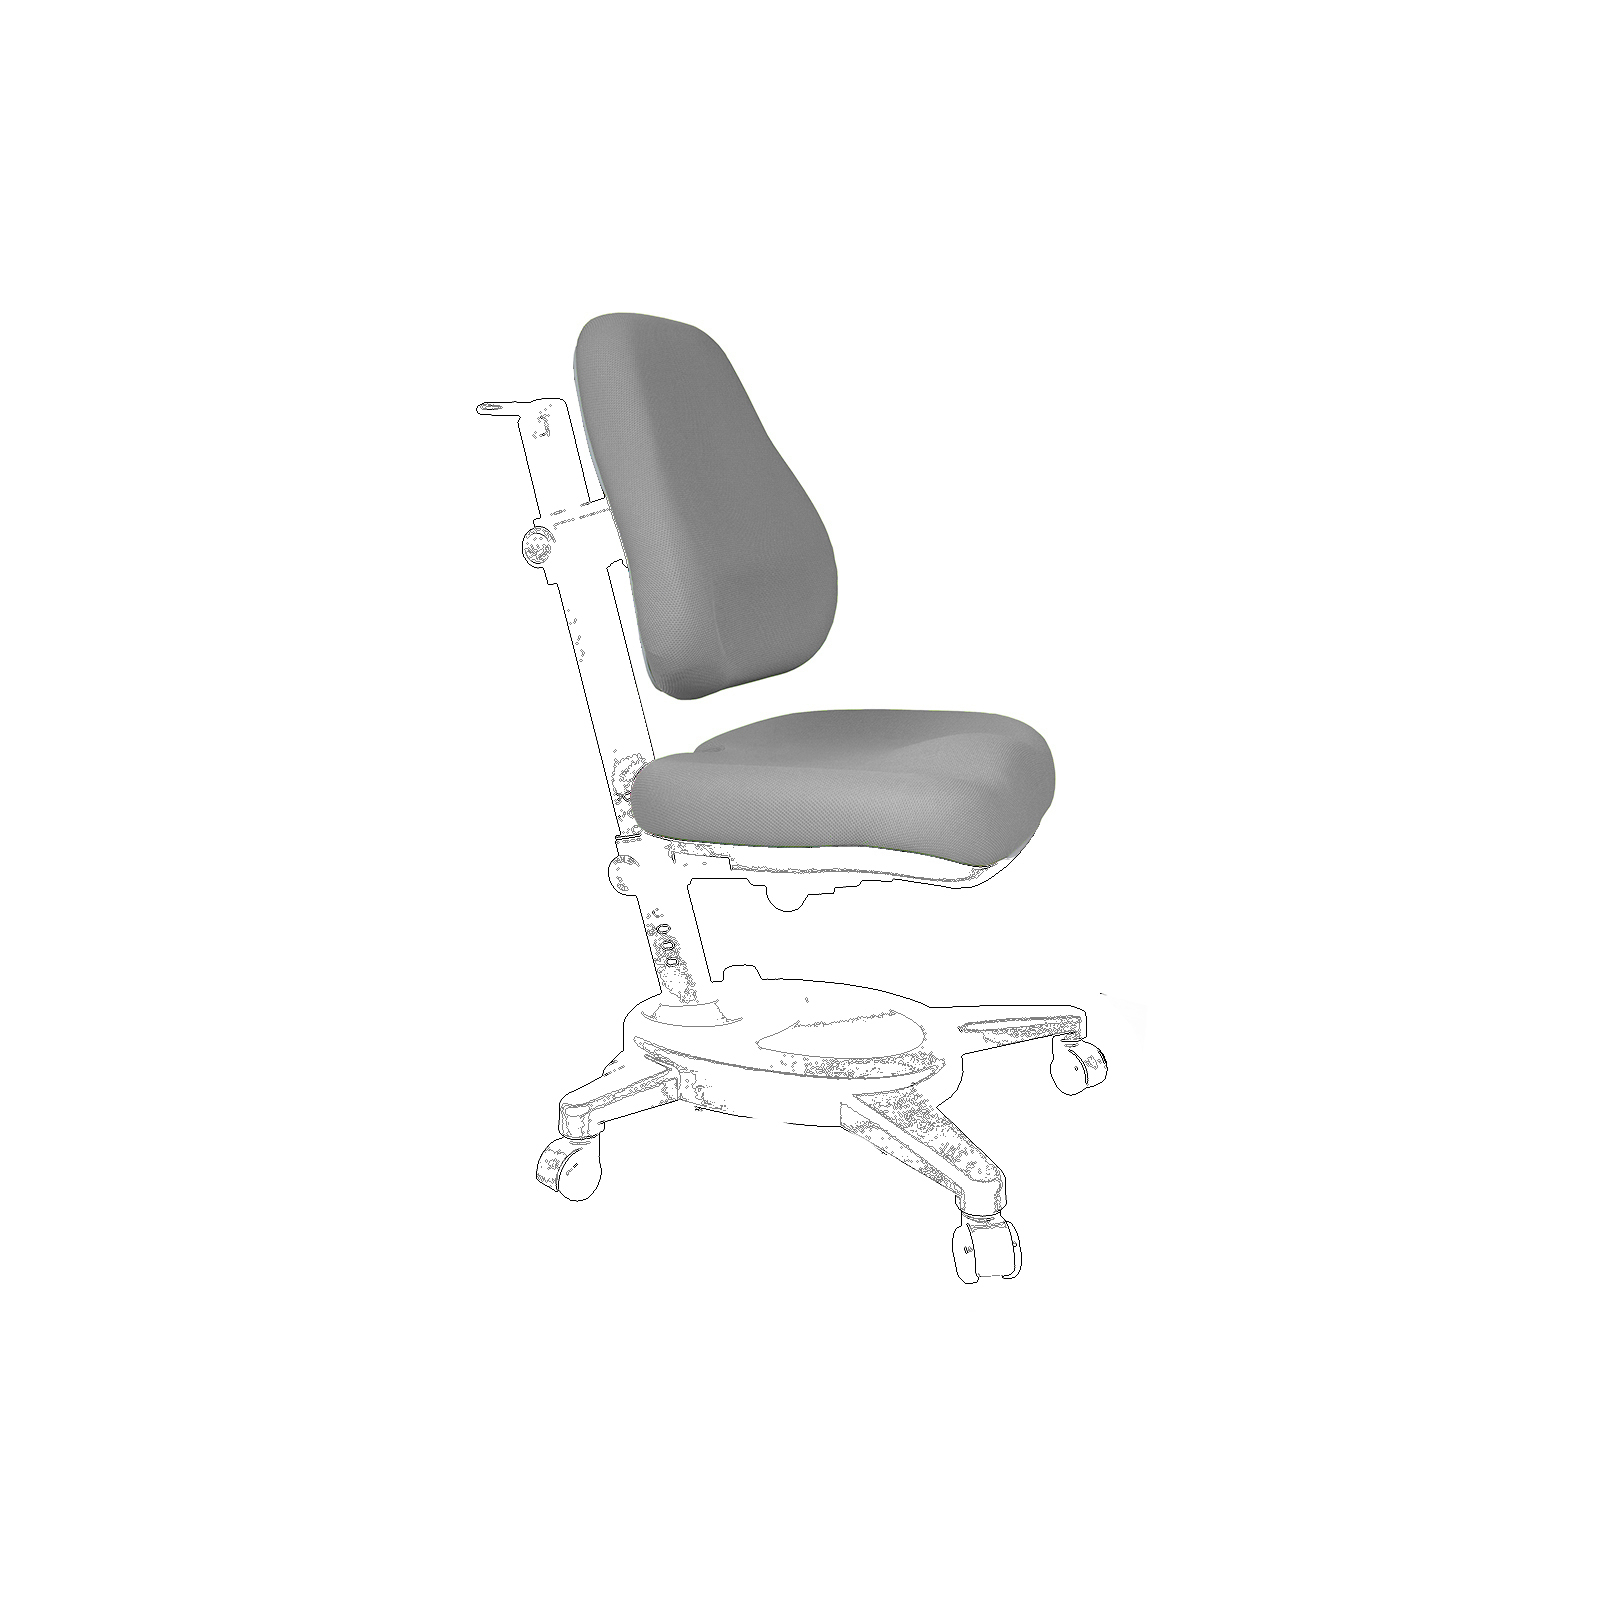 Чохол для крісла Mealux Cambridge, Onyx, Onyx Mobi сірий (Чехол G (Y-410/418/110))